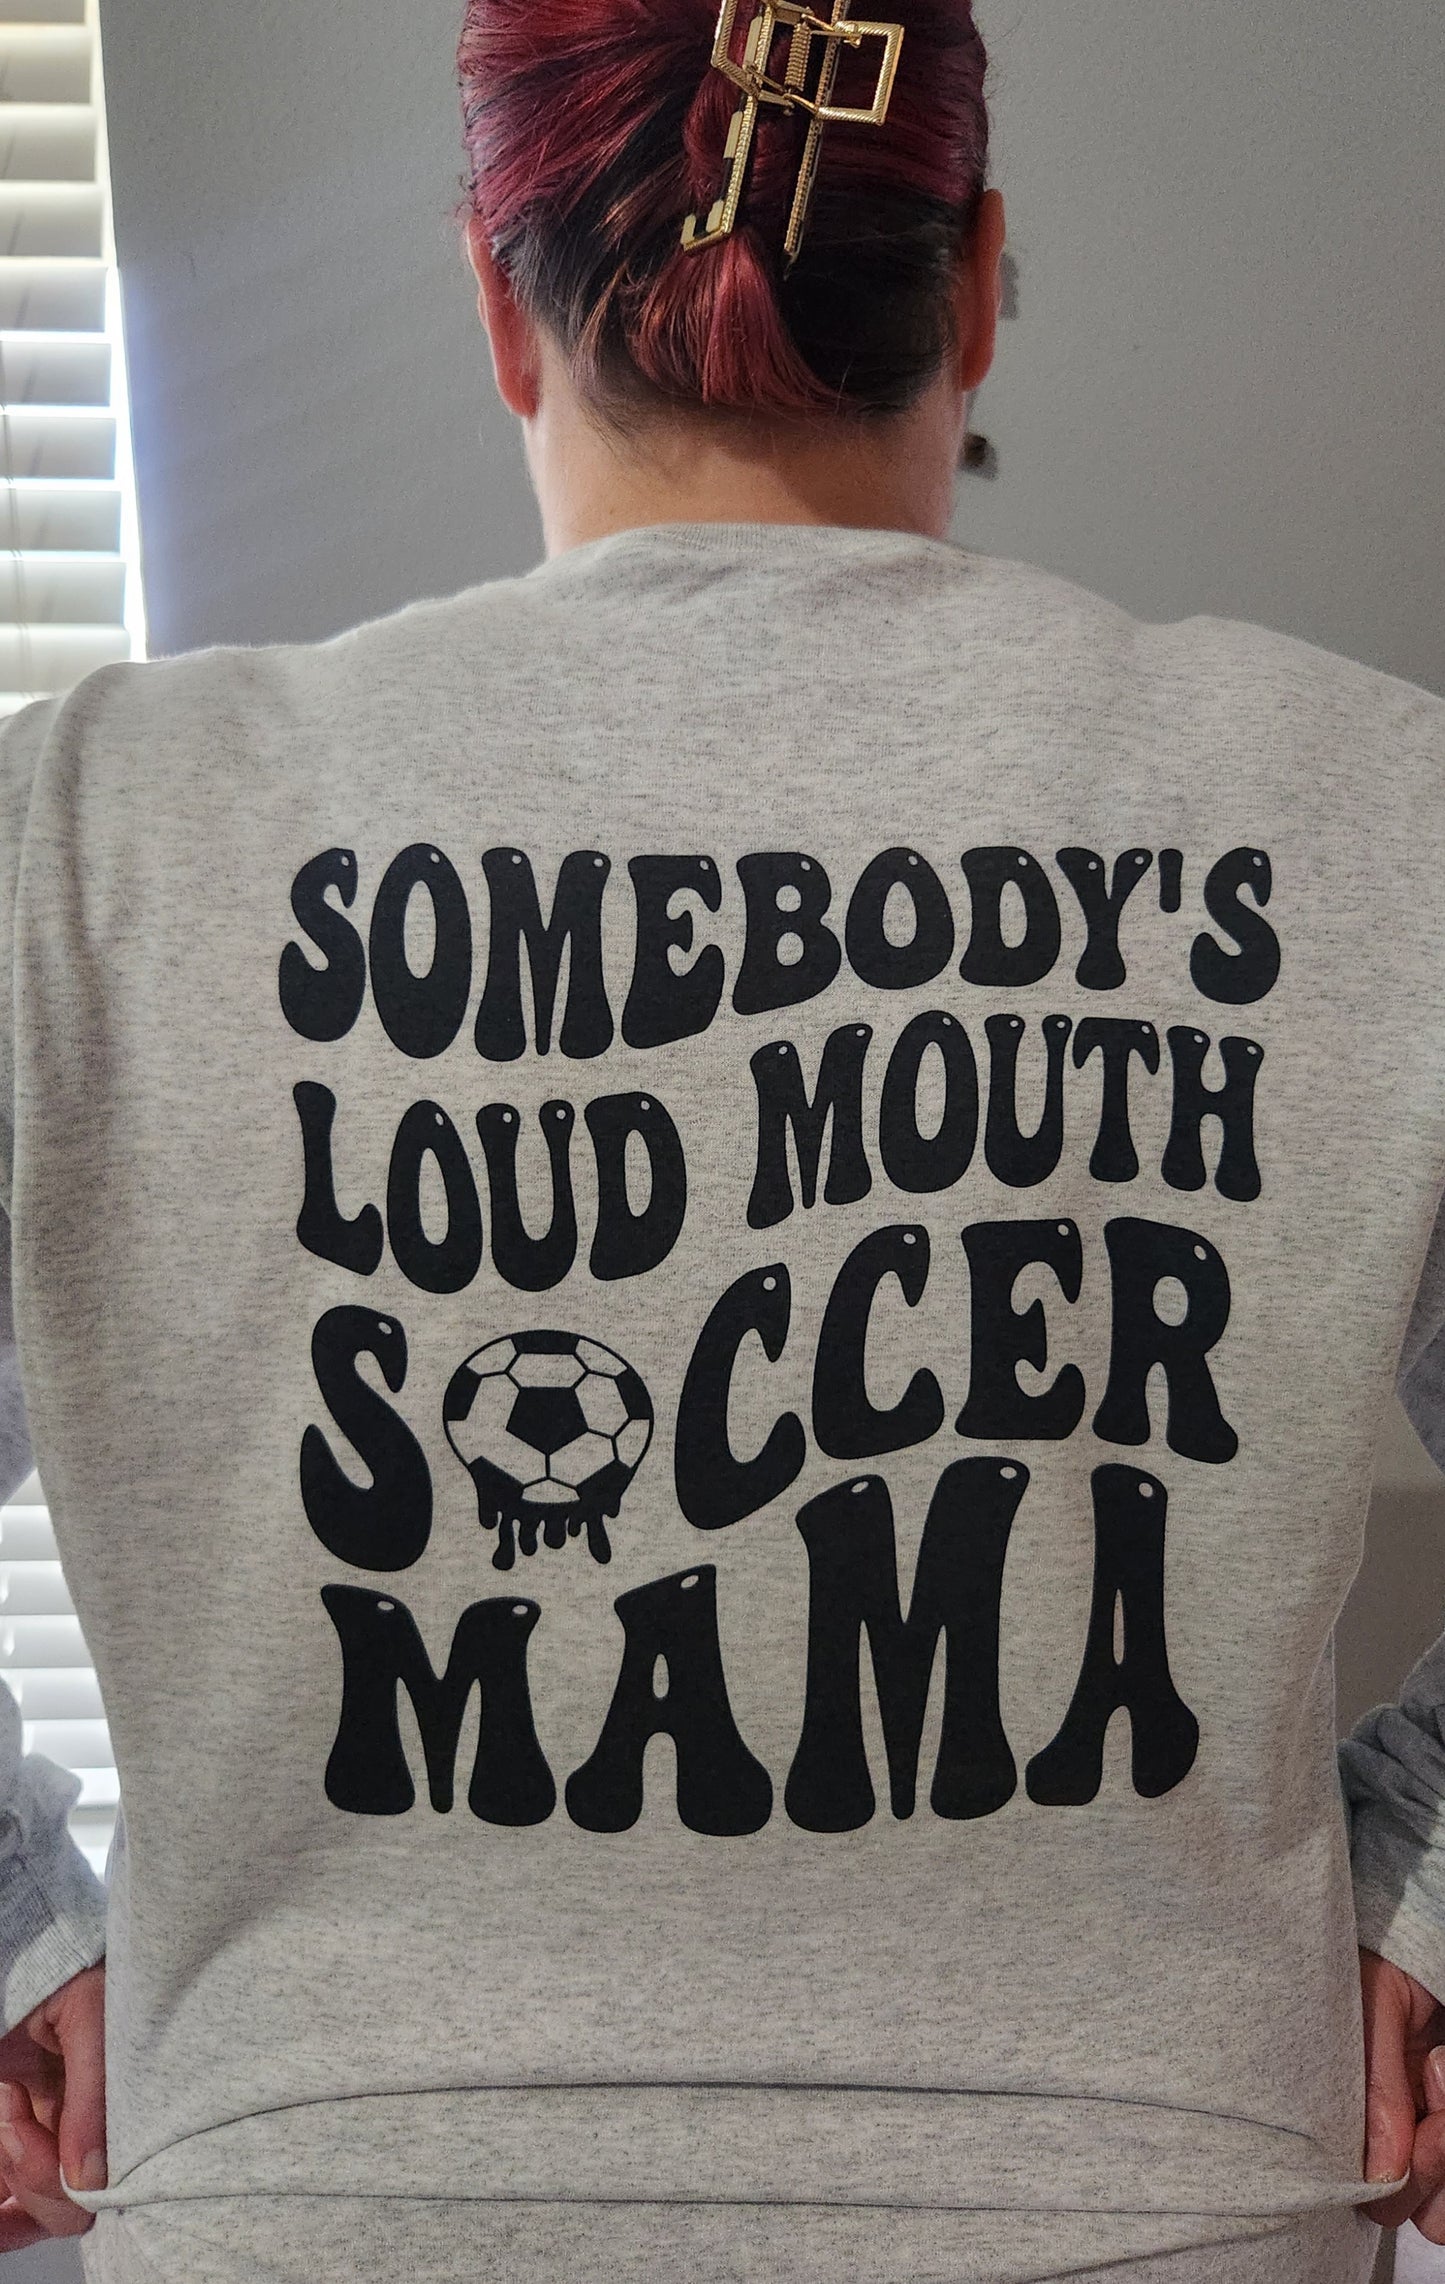 Loud Mouth Soccer Mama Tee